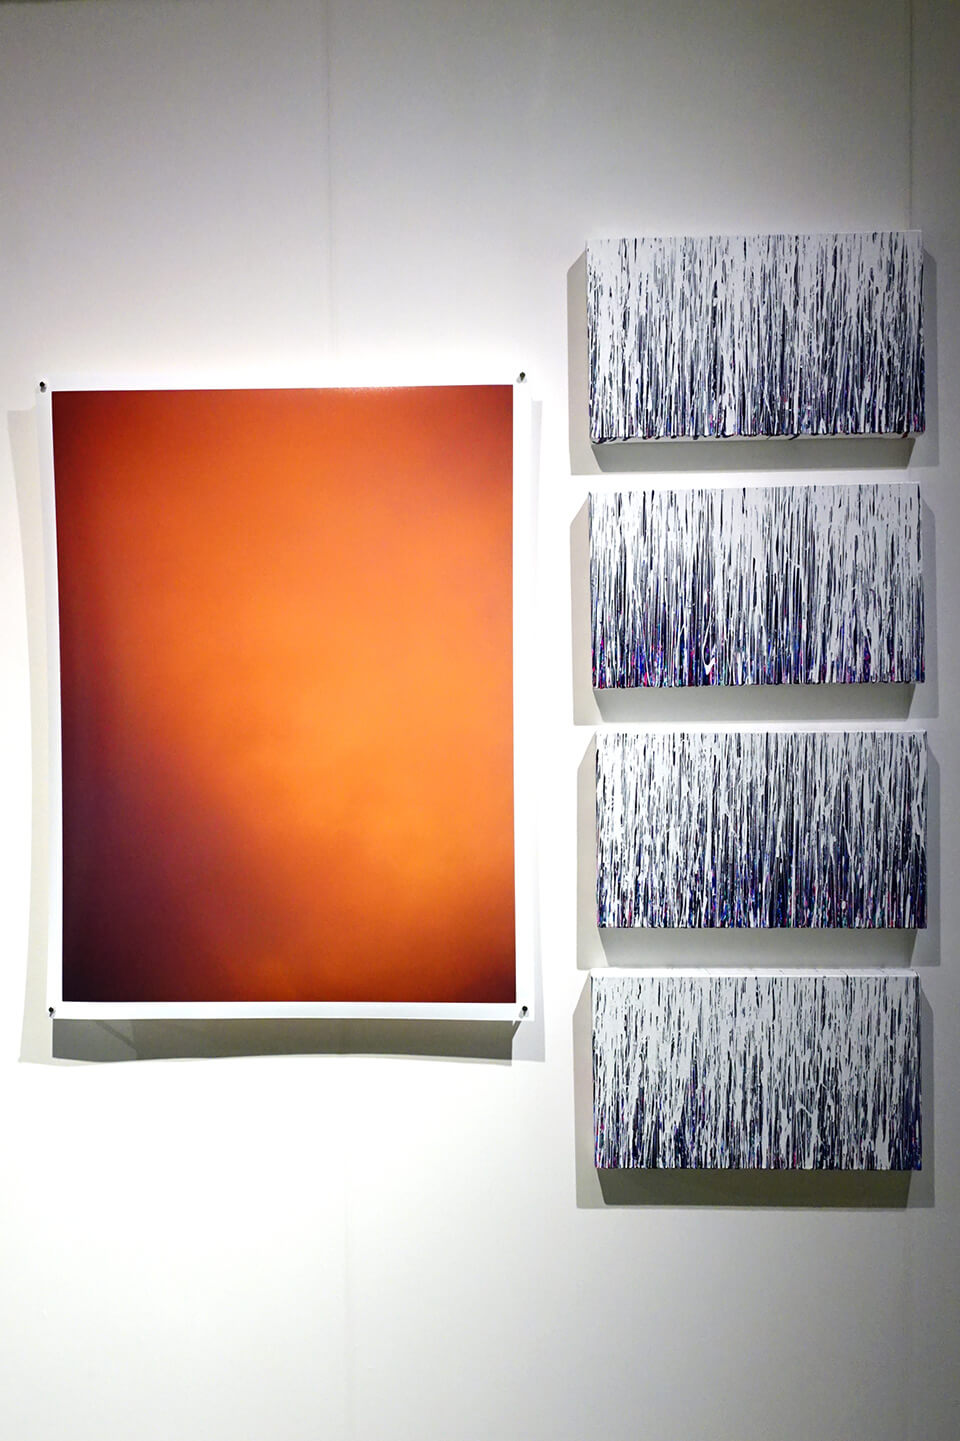 [左]大洲 大作 氏「夏の光Ⅱ」<br />
<br />
[右]「WM- RGB」<br />
2016<br />
27.3×45.5×4cm<br />
acrylic on canvas